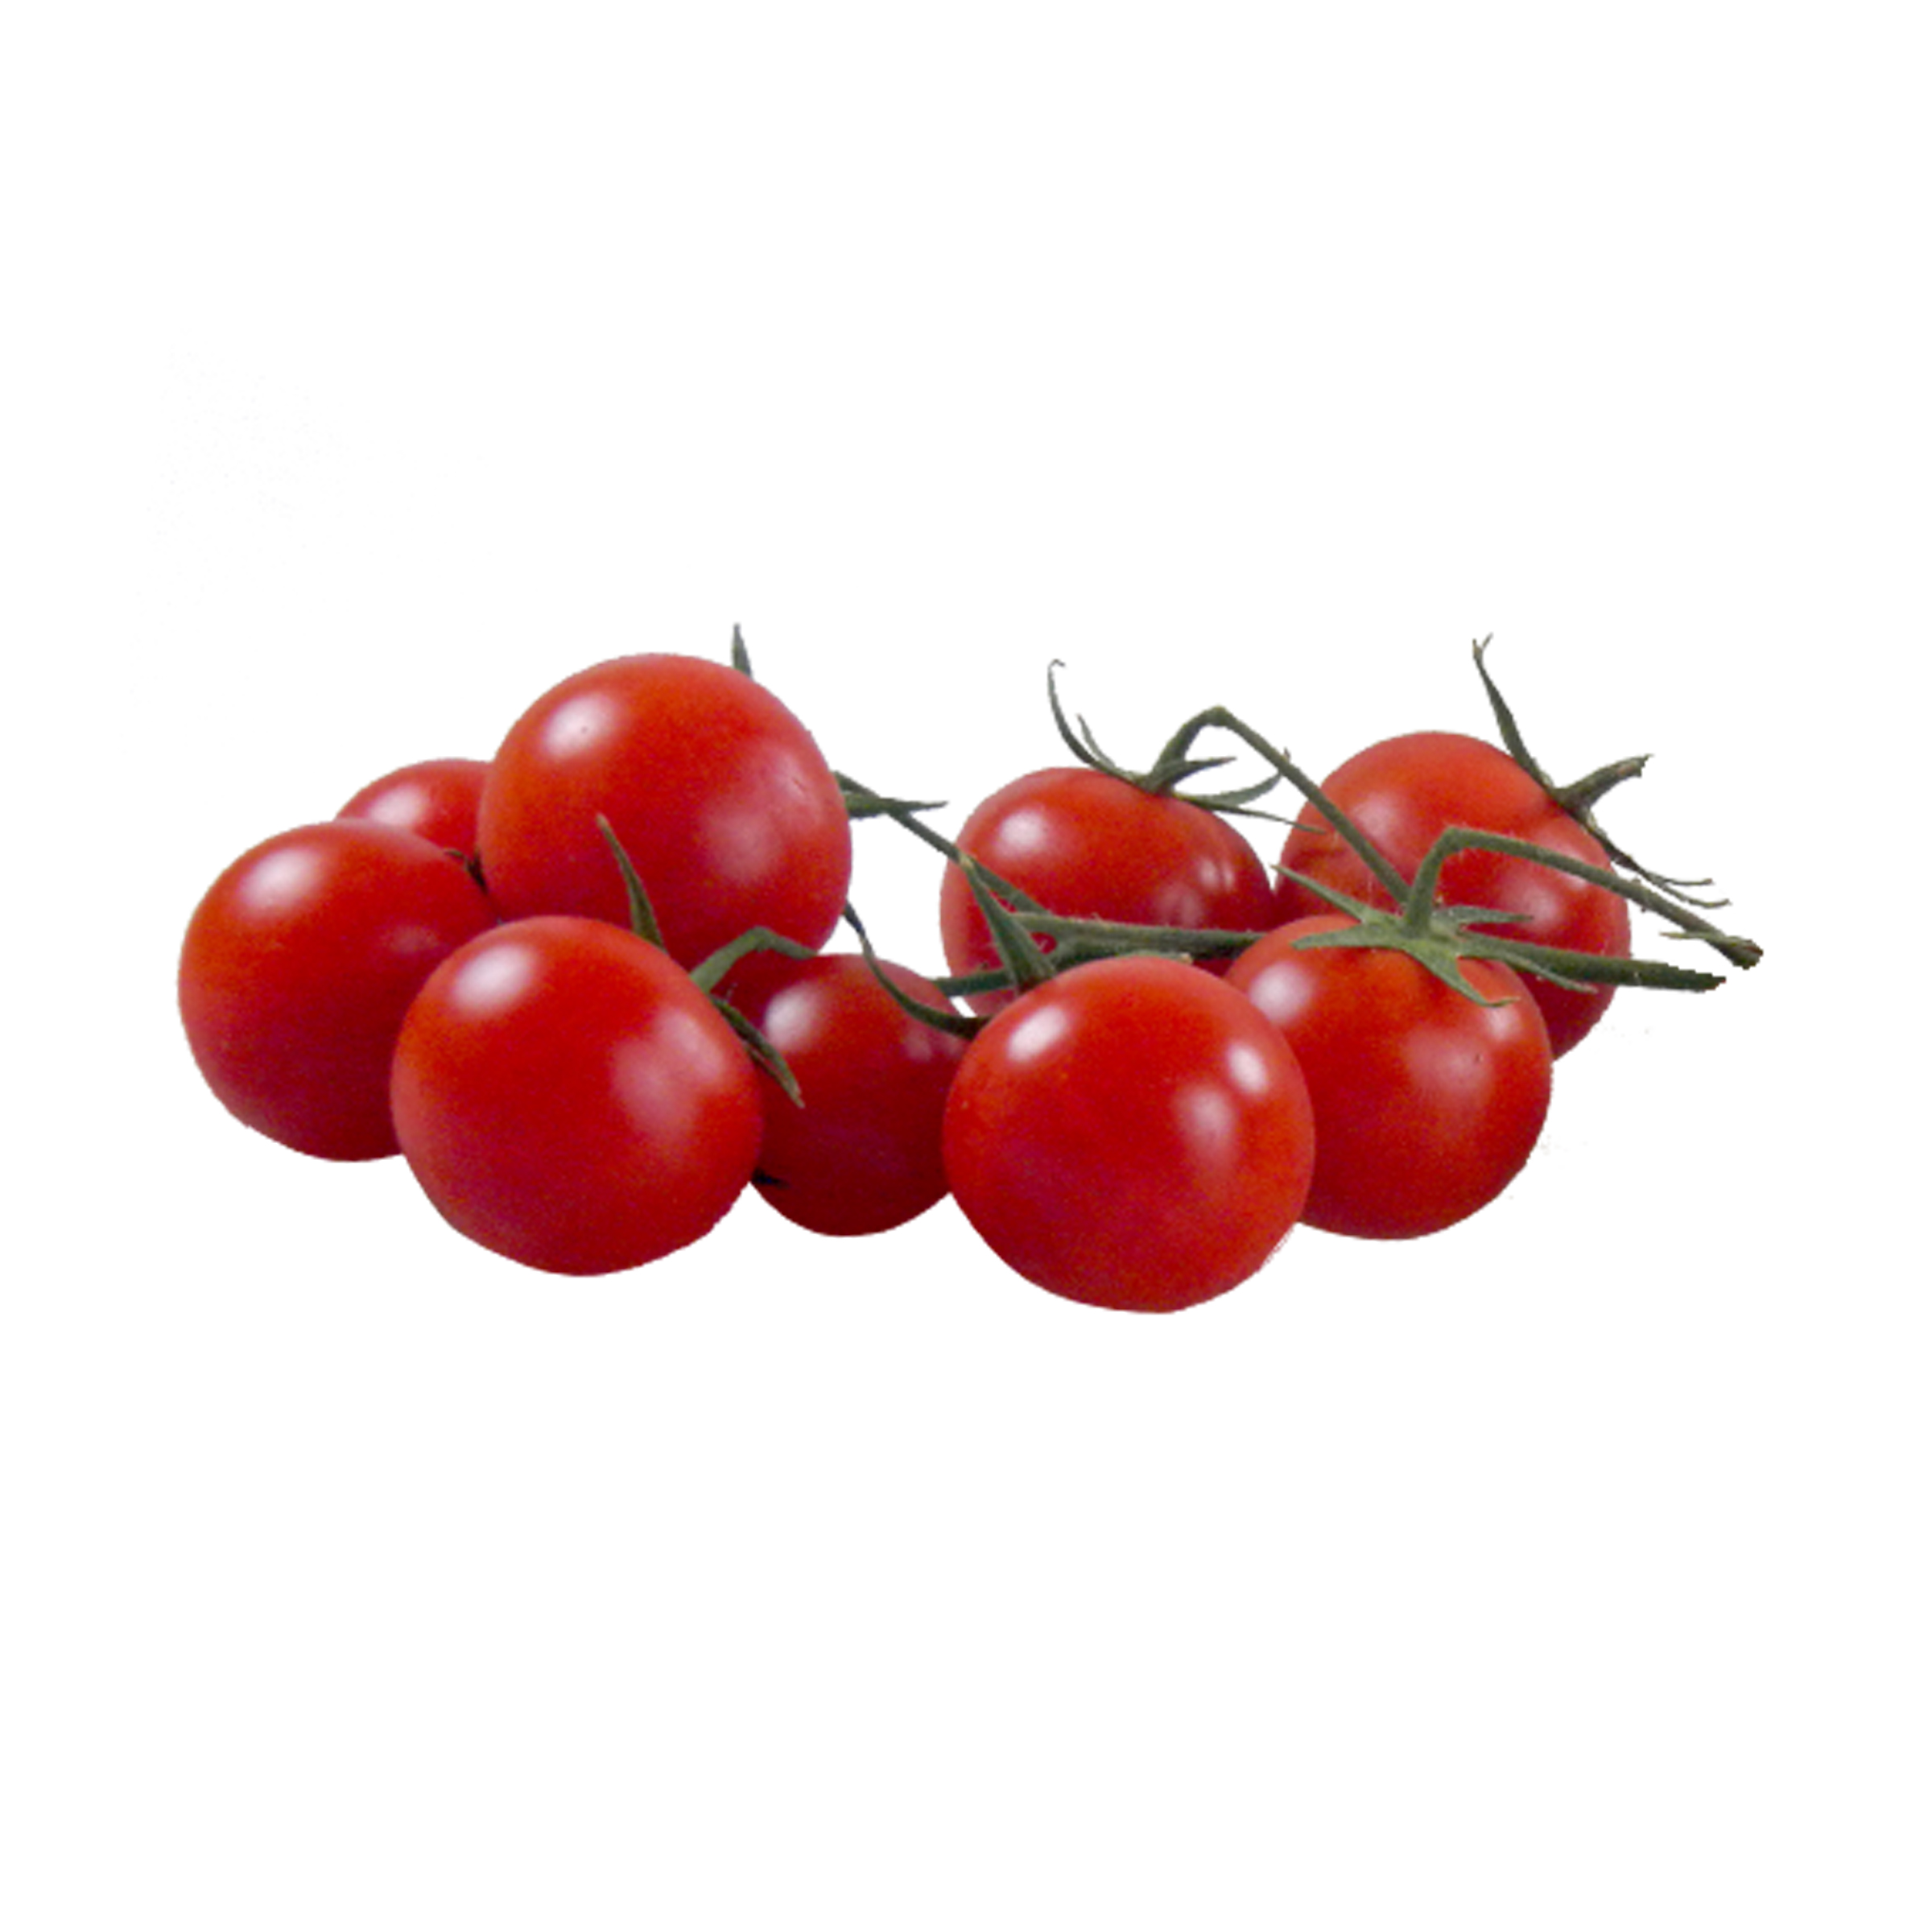 & Gemüse | Cherry-Strauchtomaten Obst | & Lebe Tomaten Pilze Versand | Gesund | Gemüse